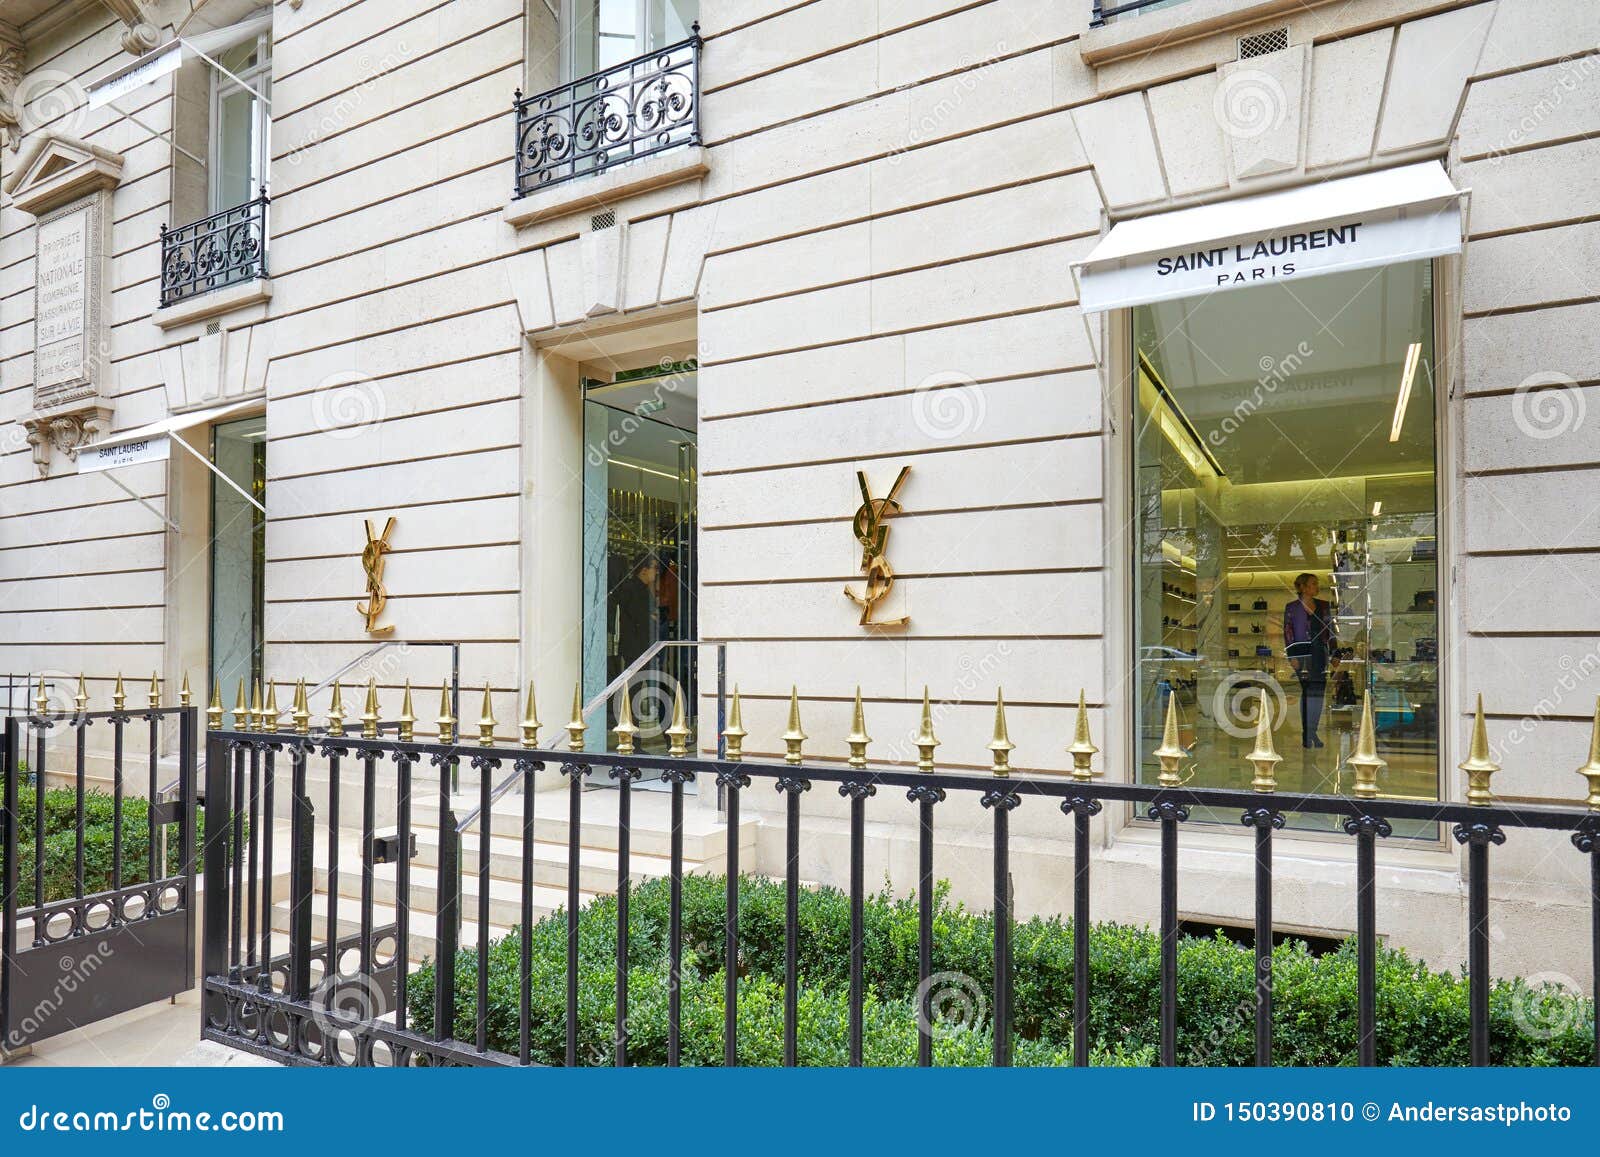 France, Paris, Luxury shops on Montaigne Avenue, Louis Vuitton